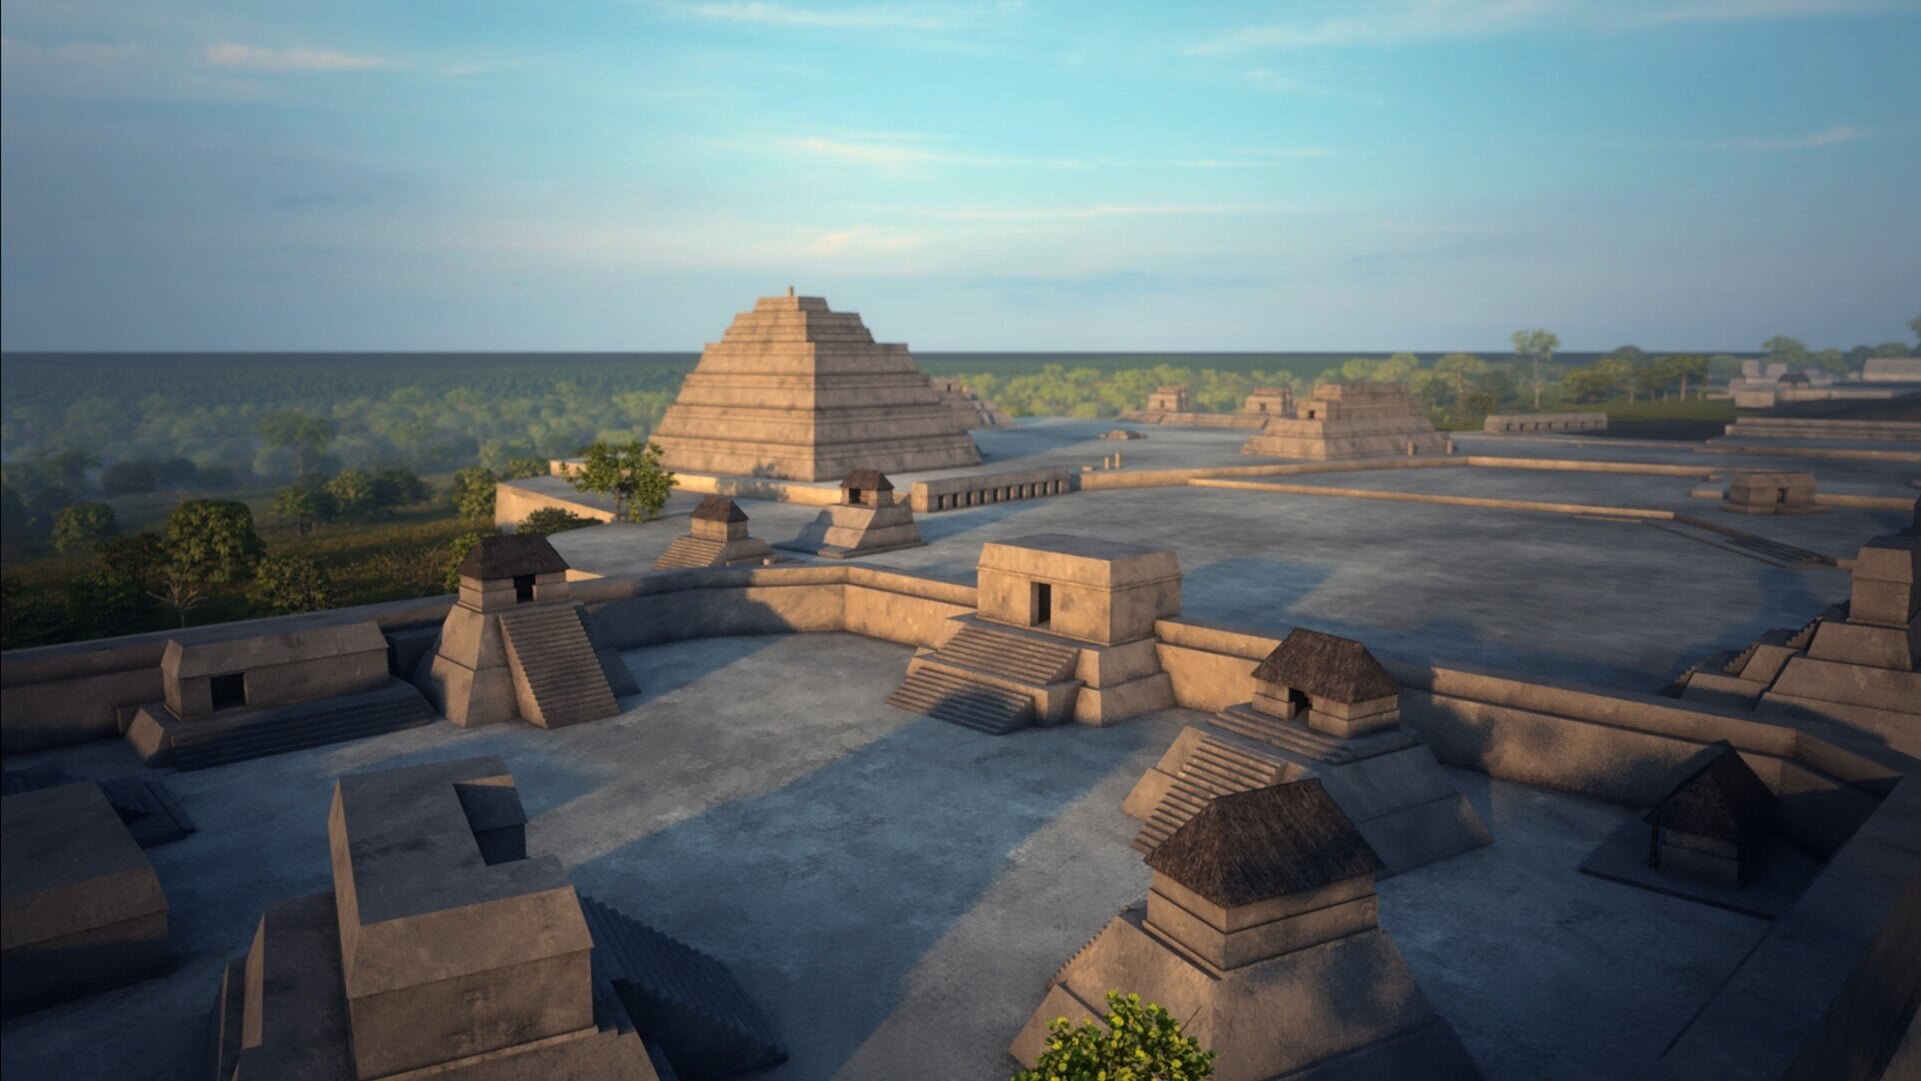 Naachtun – Verborgene Stadt der Mayas